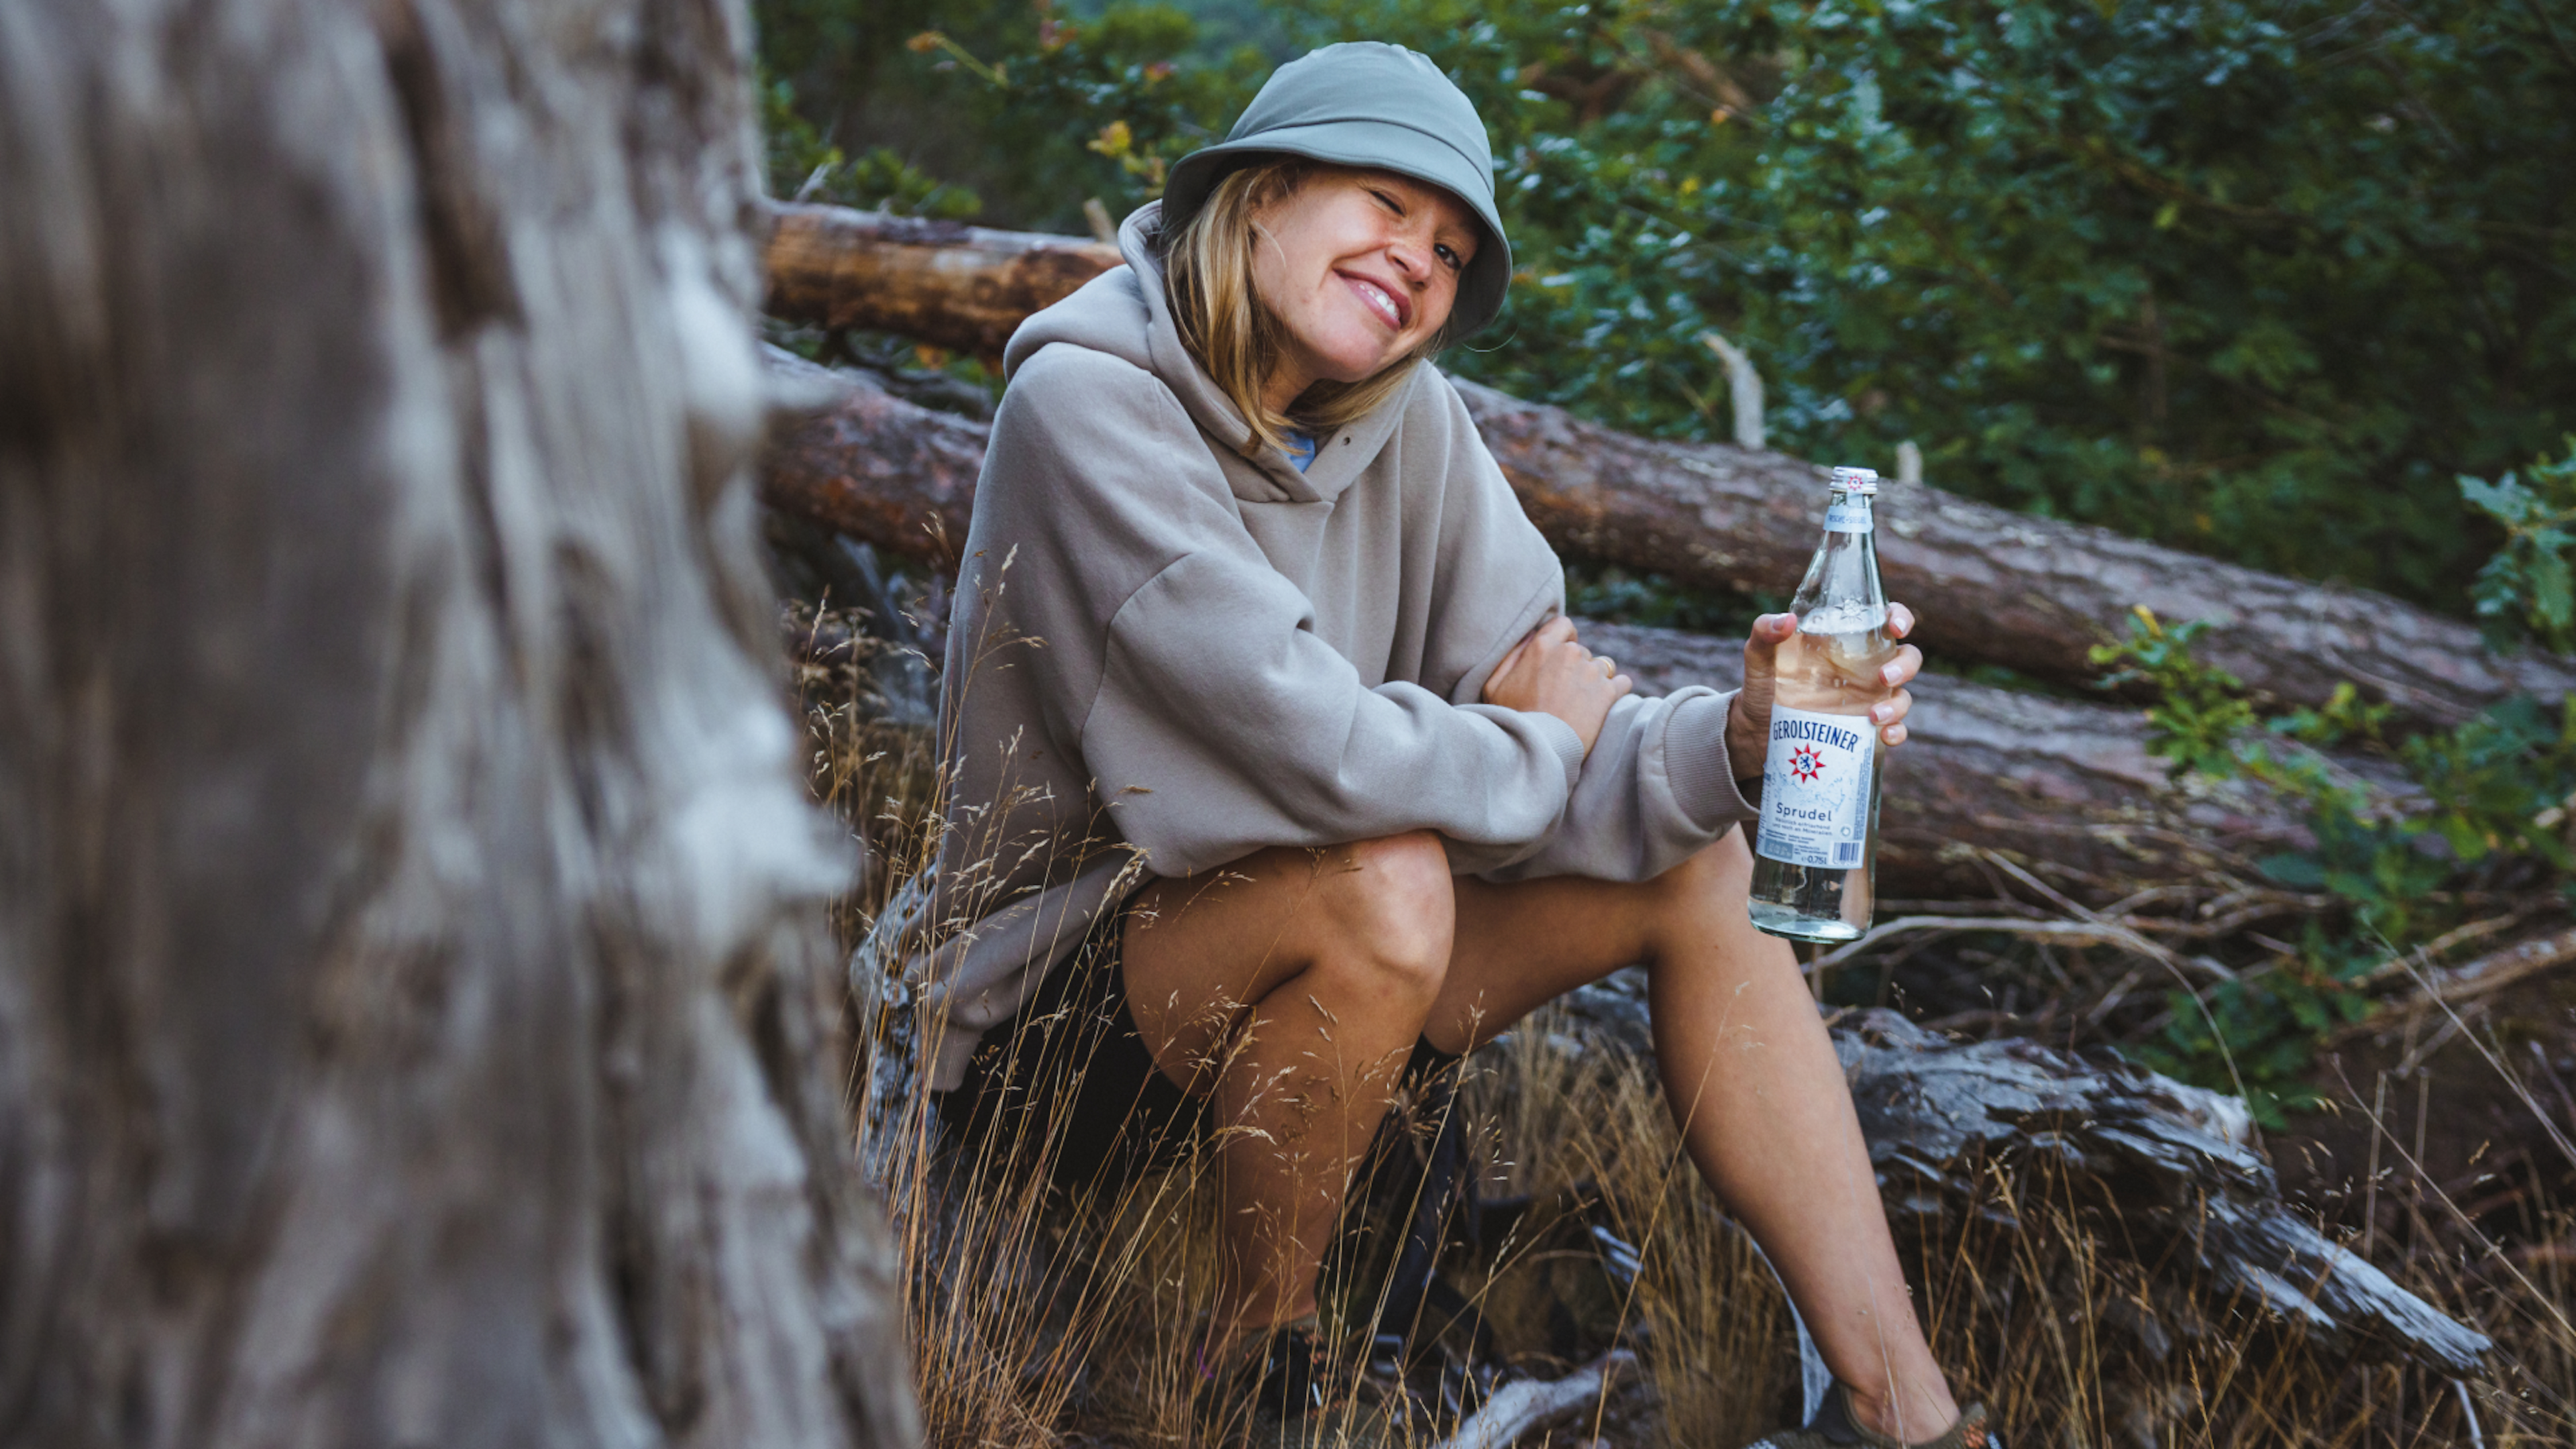 Frau sitzt auf einem Baumstamm mit einer Flasche in der Hand